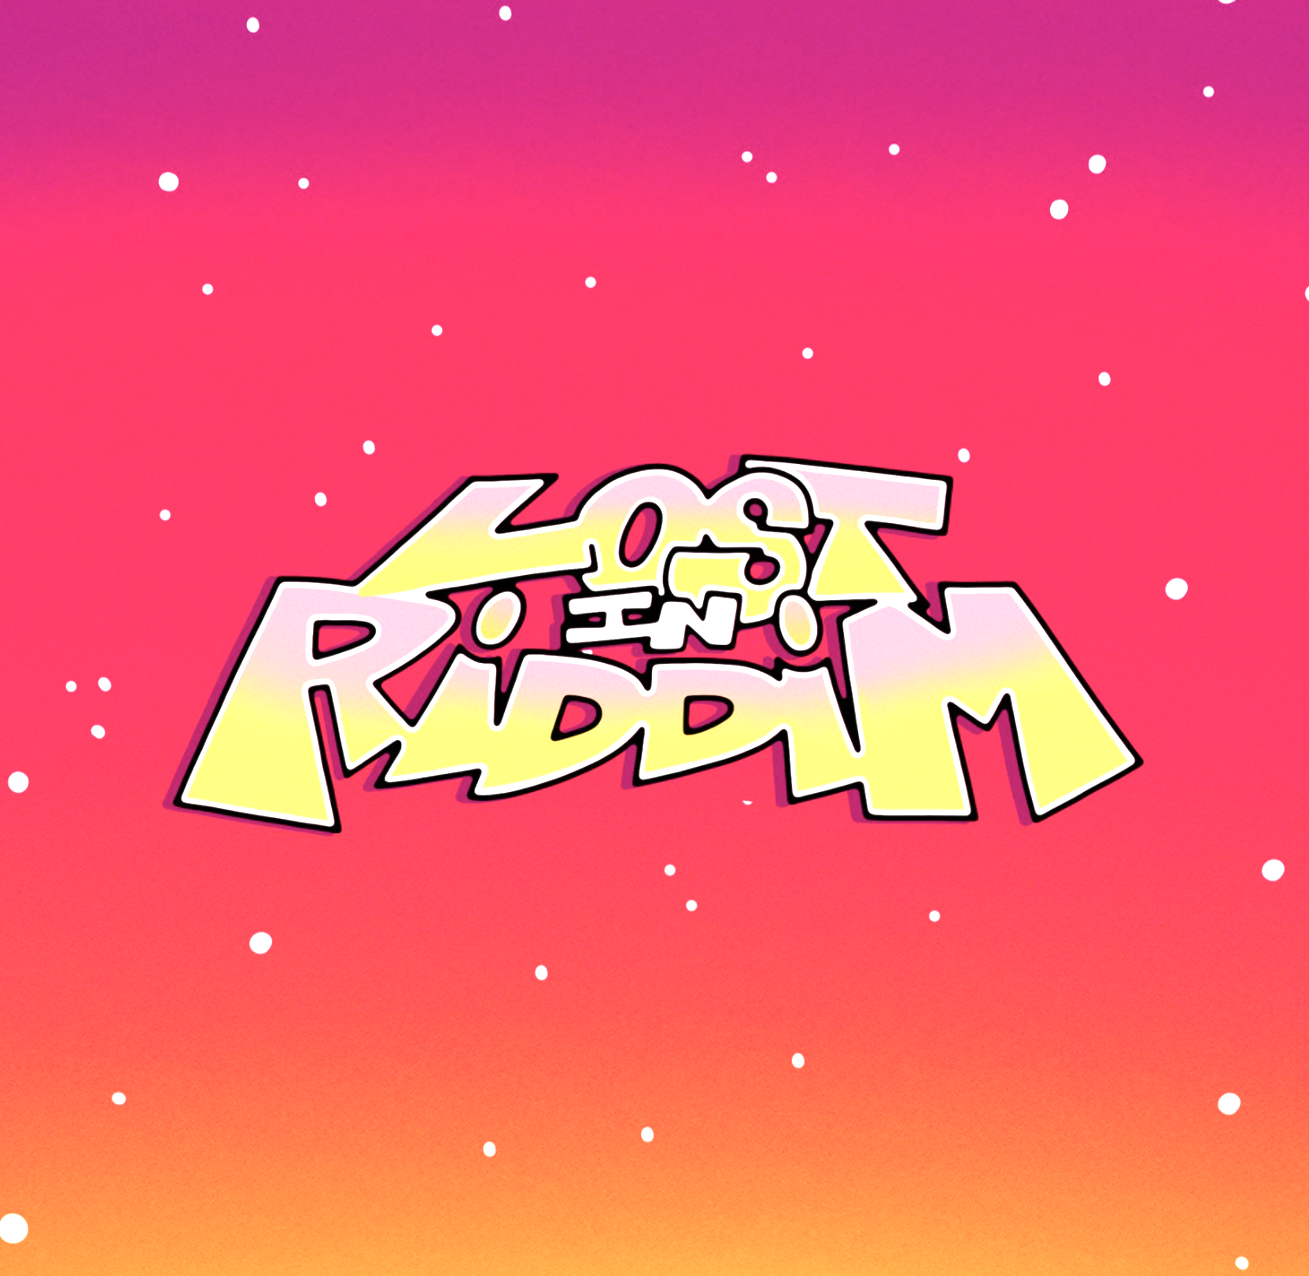 Lost In Riddim profile image